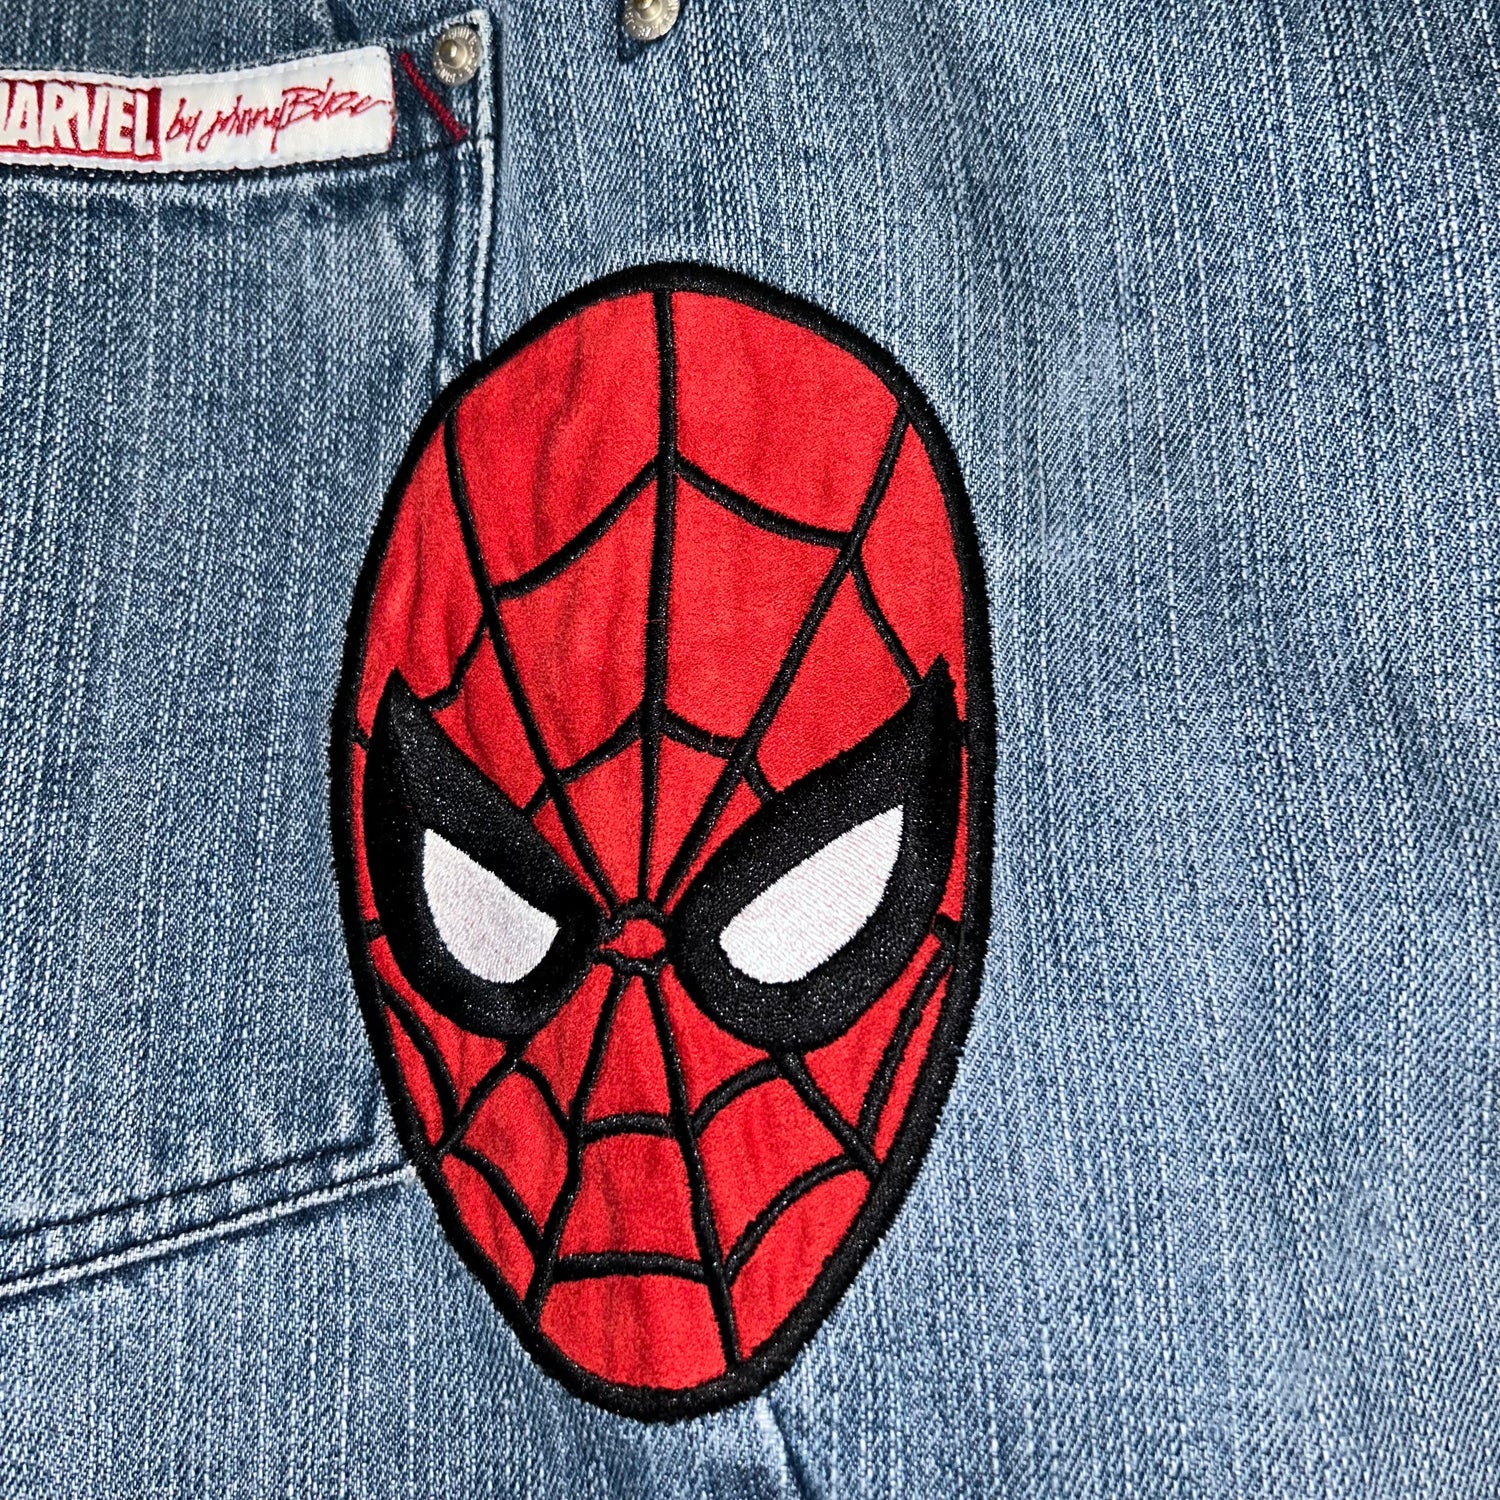 Baggy Jeans Johnny Blaze Spider-Man Marvel Vintage  (34 USA  L)